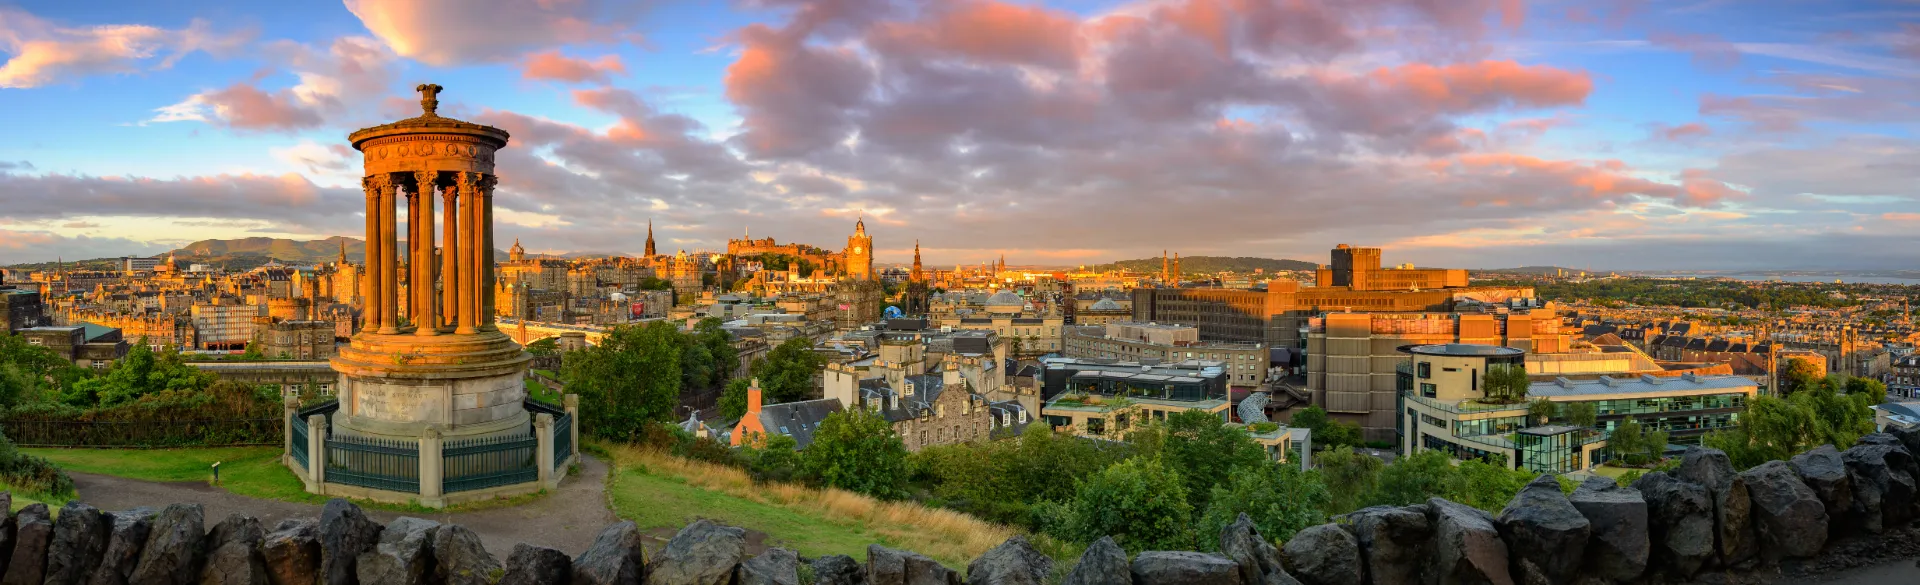 Edinburgh - Oversikt over byen